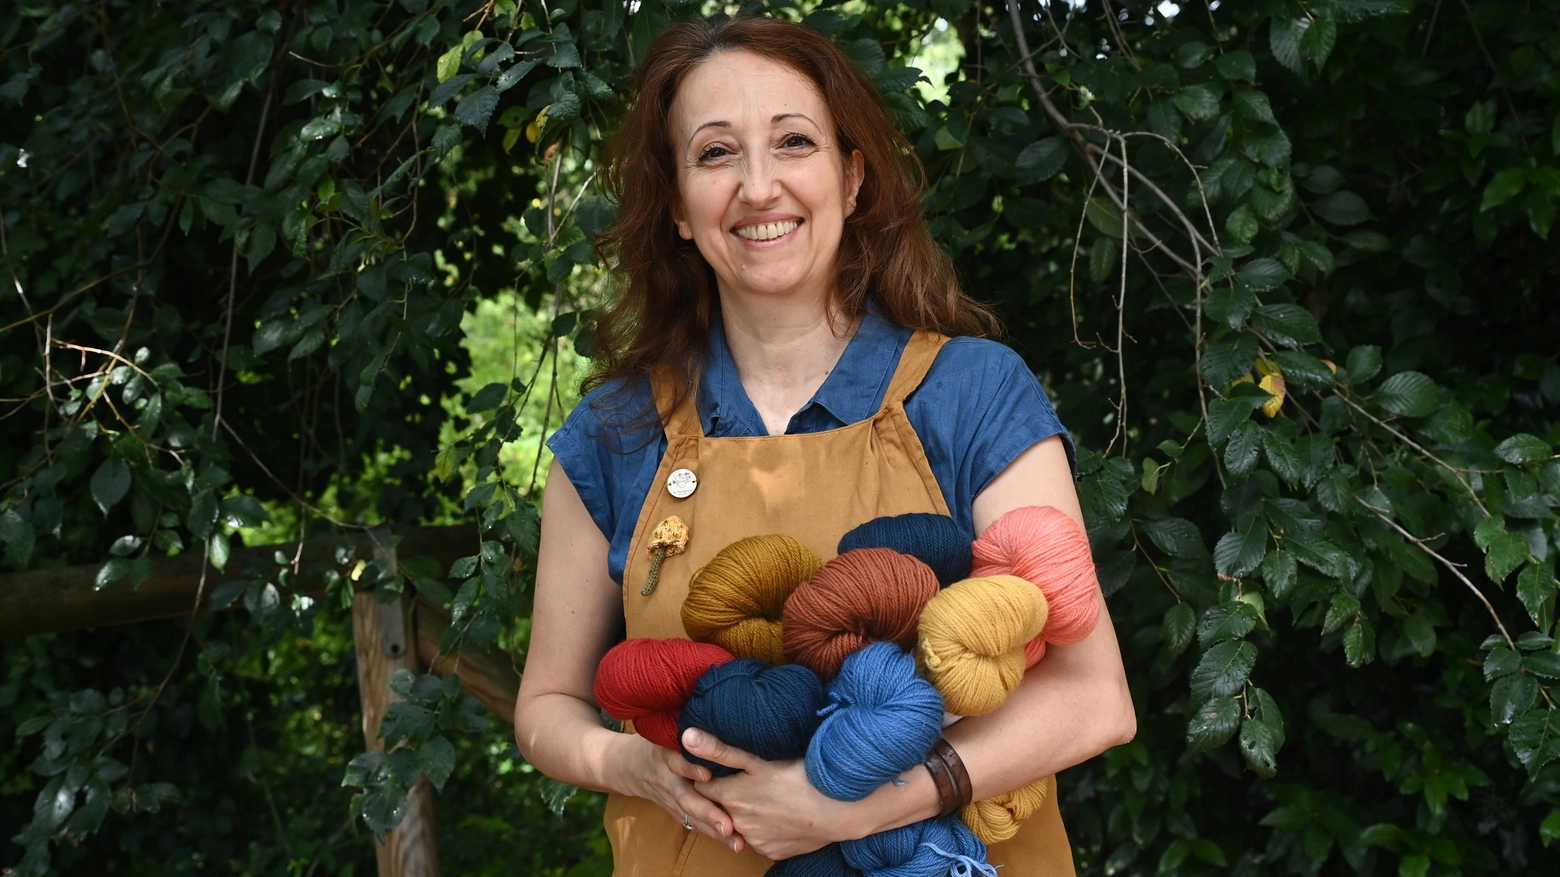 Raffaella Monaco tinge la lana: la sua passione ora si trasforma in un lavoro. E' lei la protagonista del podcast di oggi